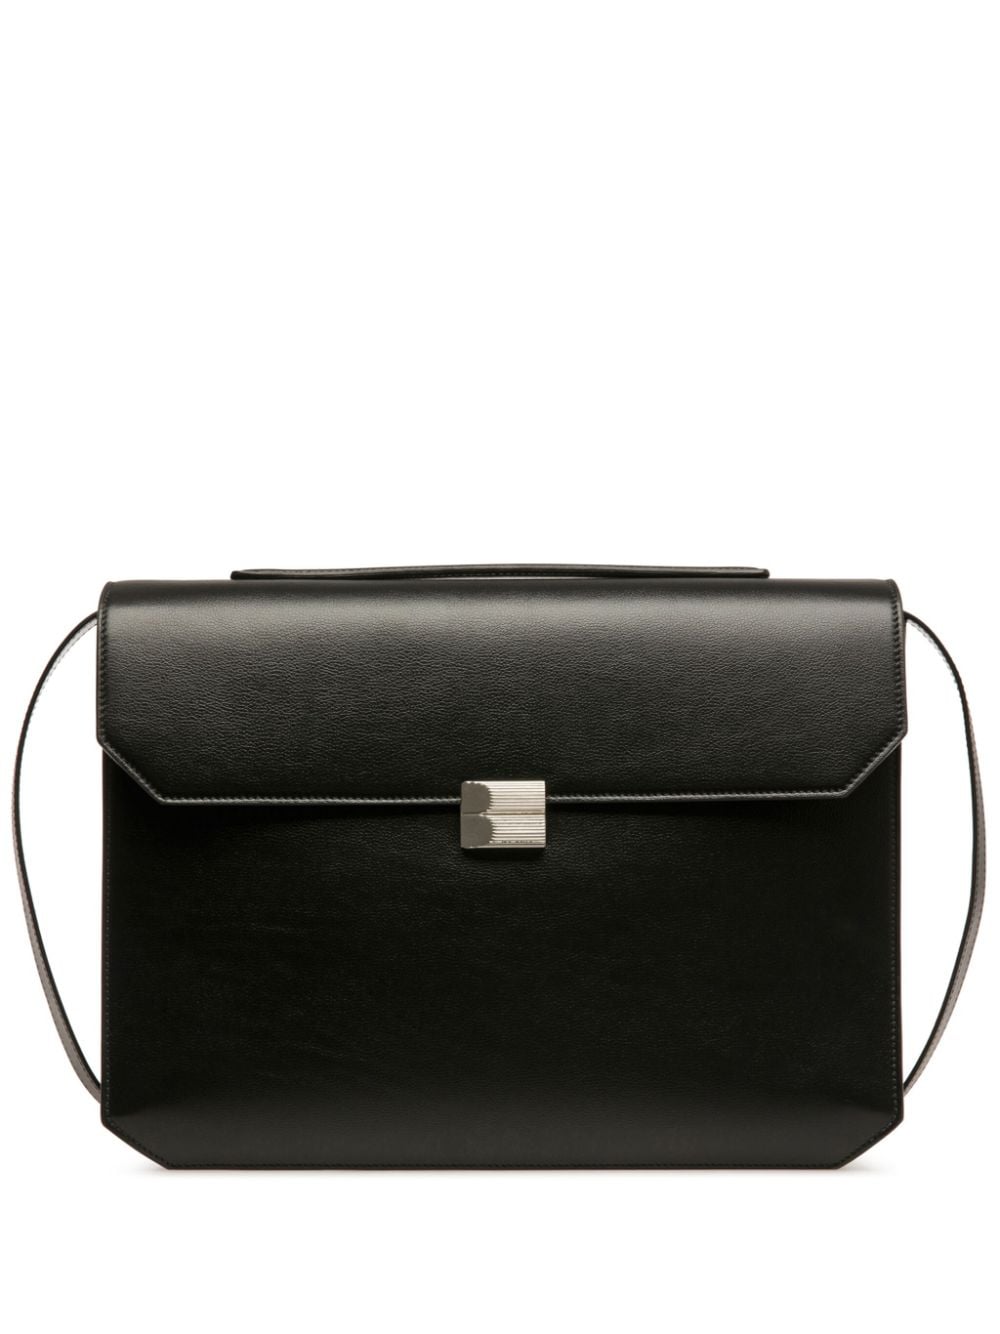 Bally Packed leather briefcase - Black von Bally